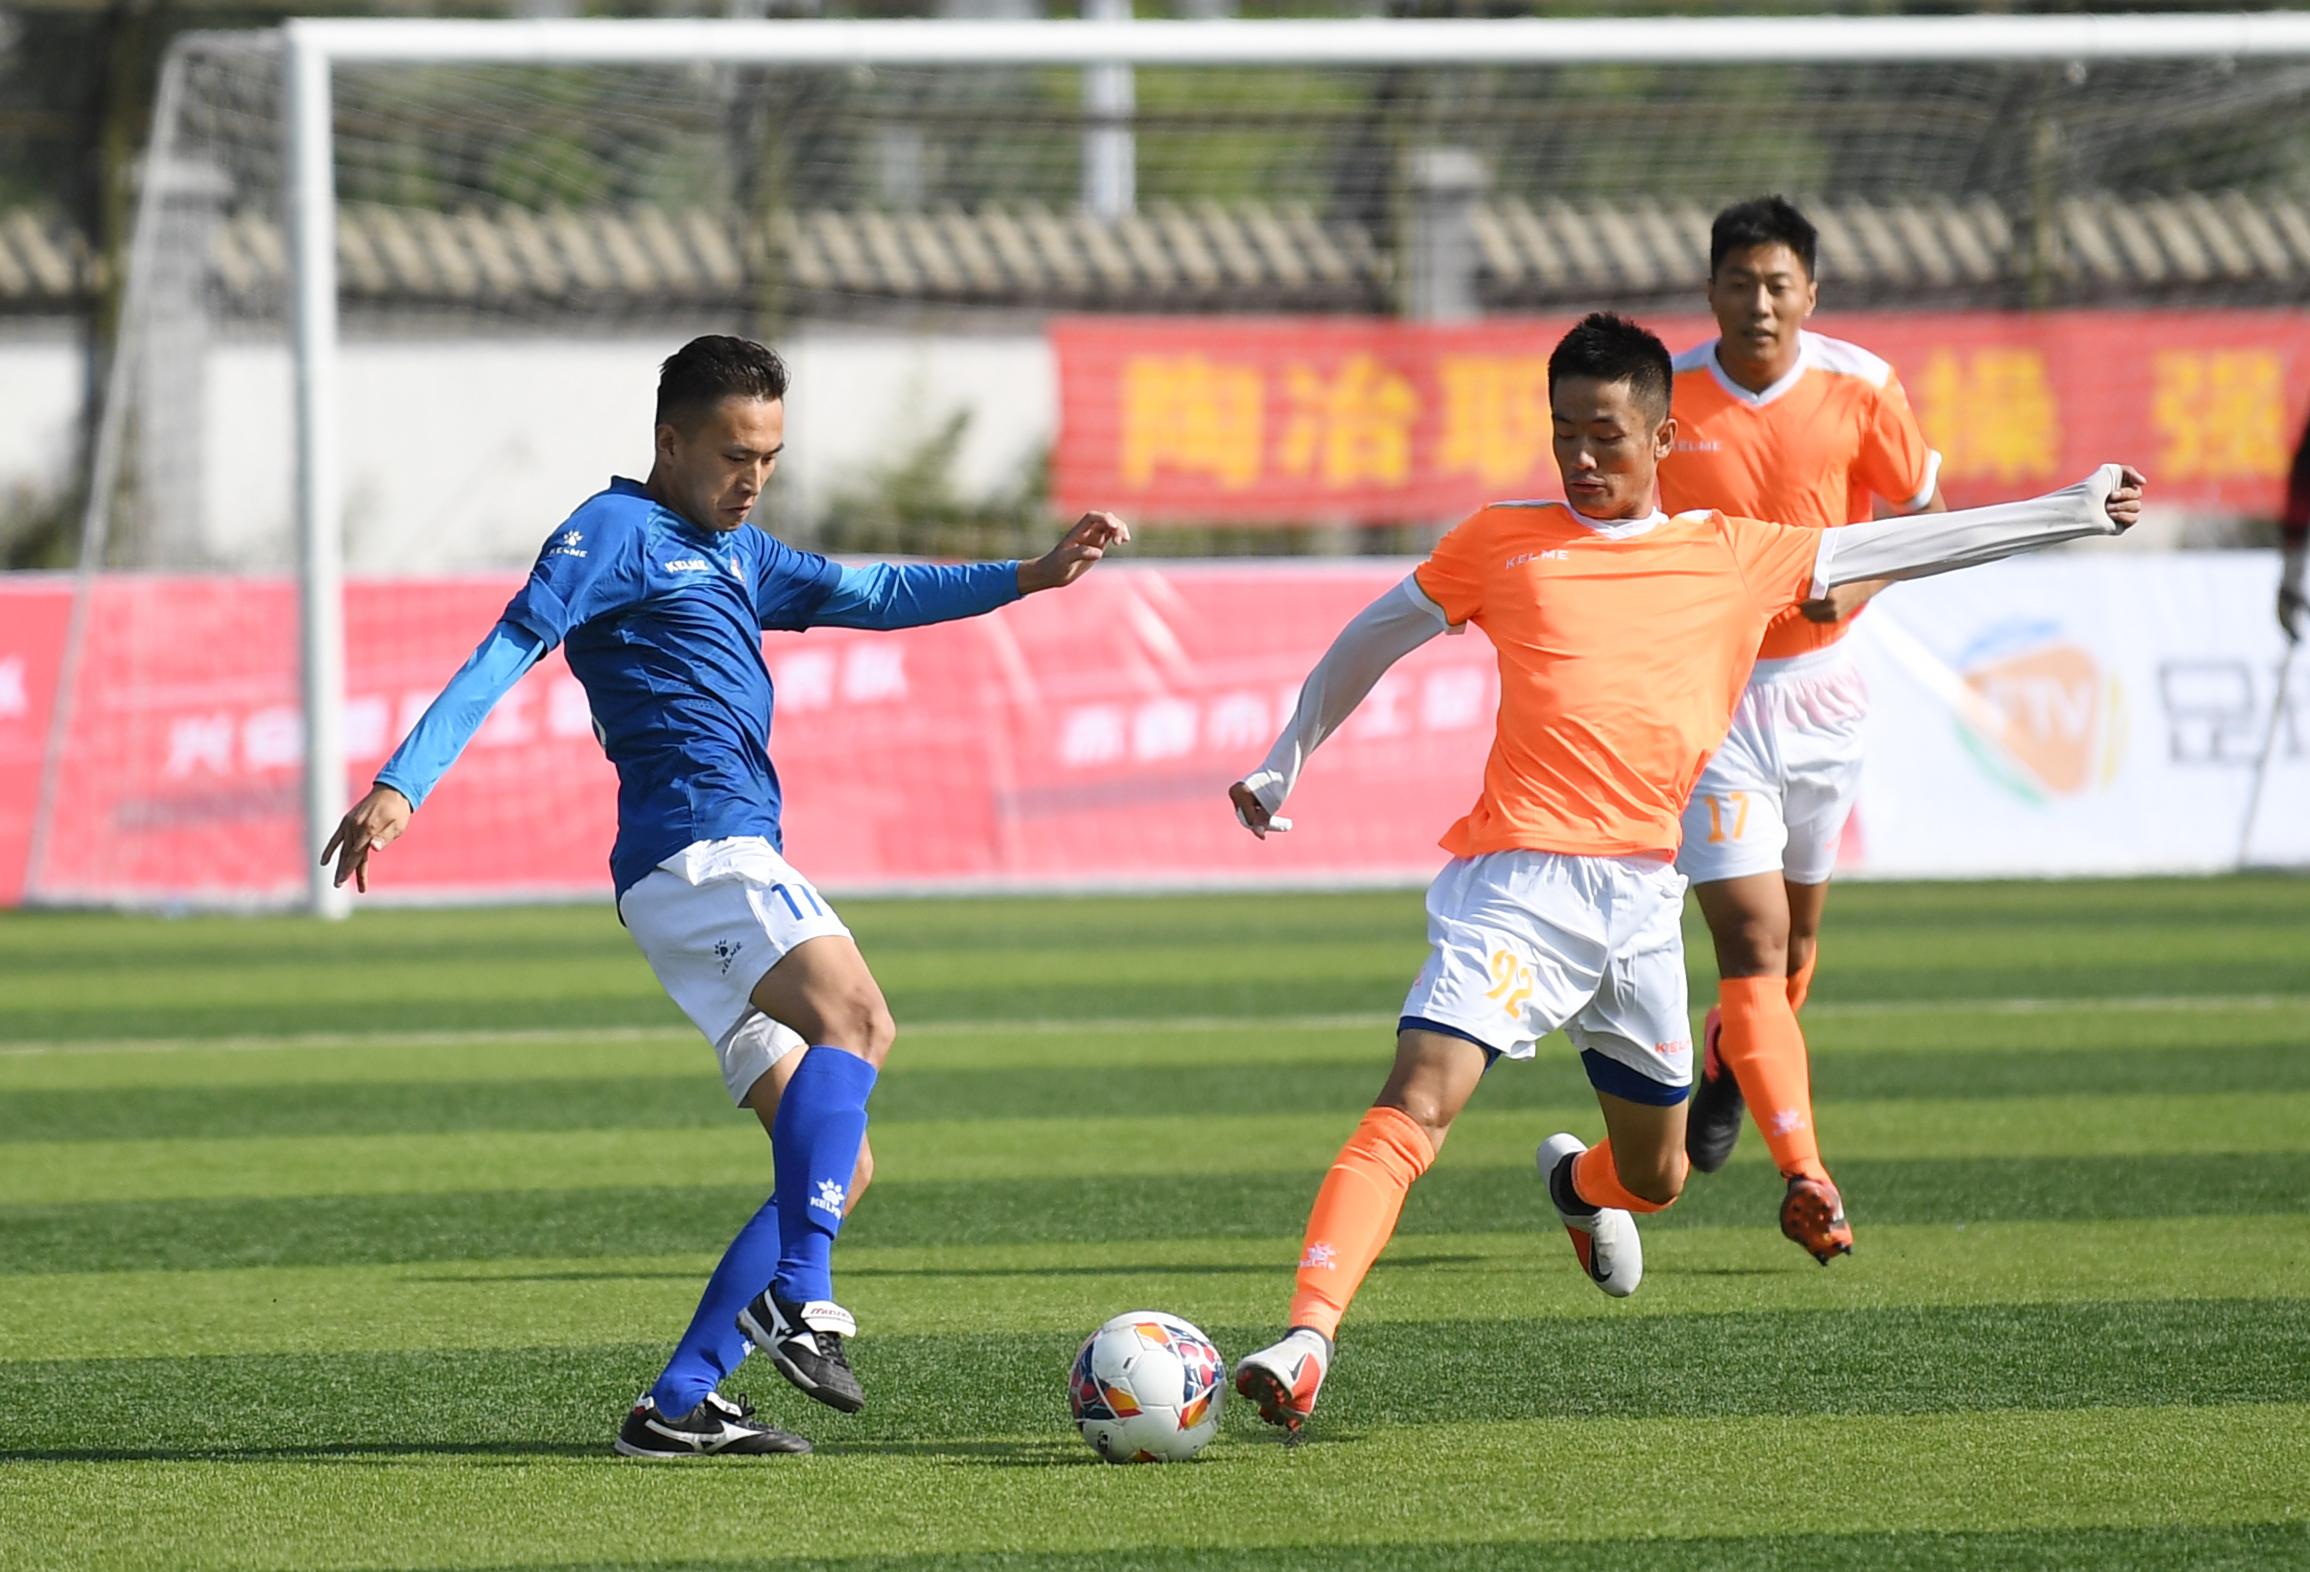 
“中国足球”现象是当今社会的顽疾靠几个铜臭